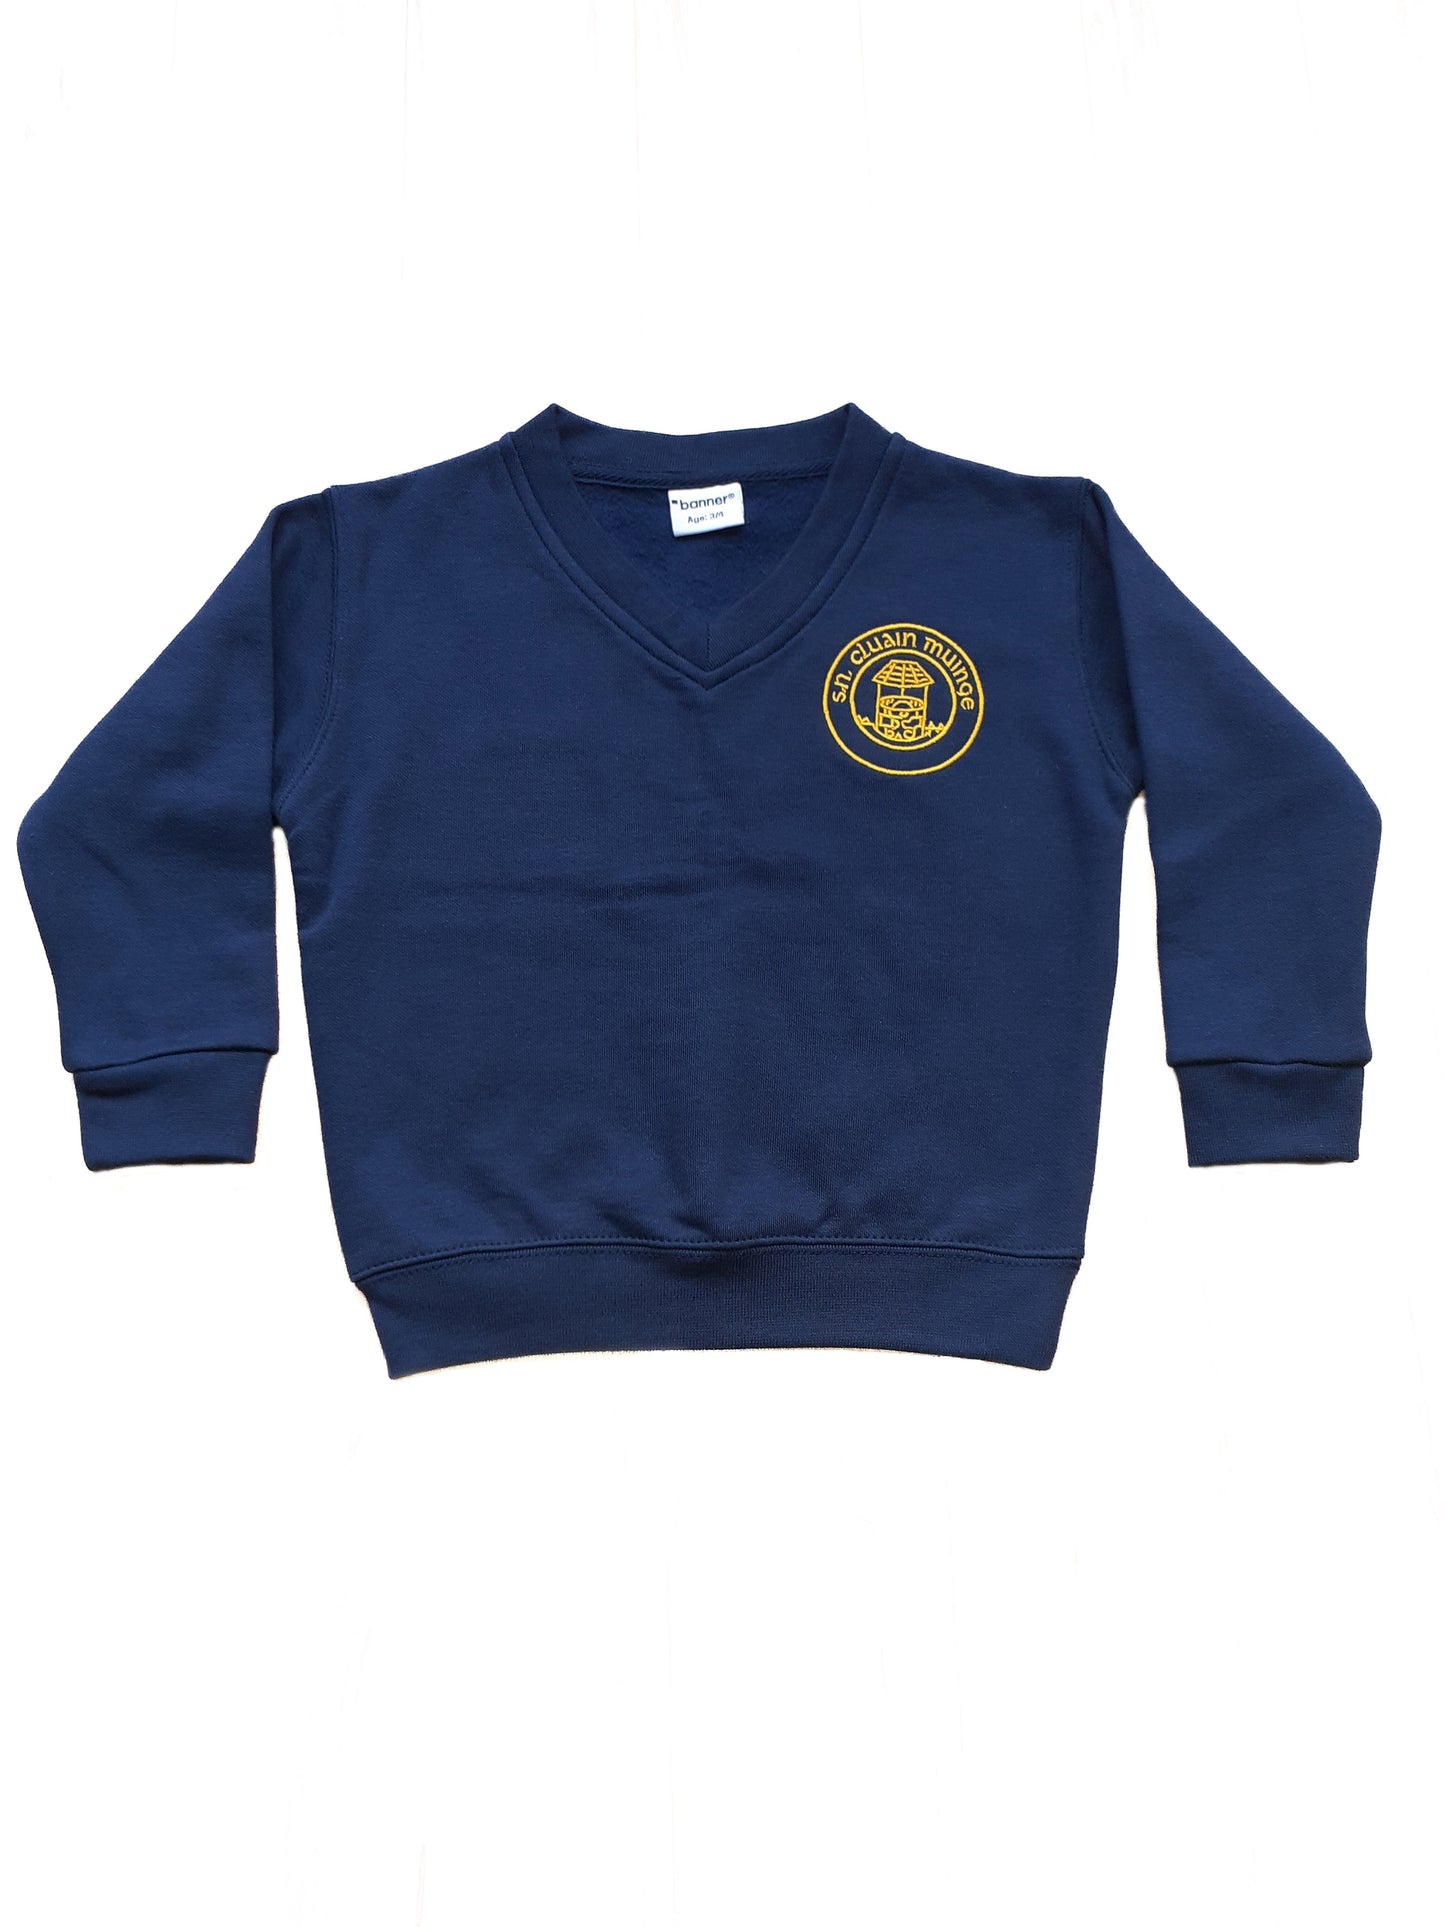 Clonmoney N.S. - School Sweatshirt